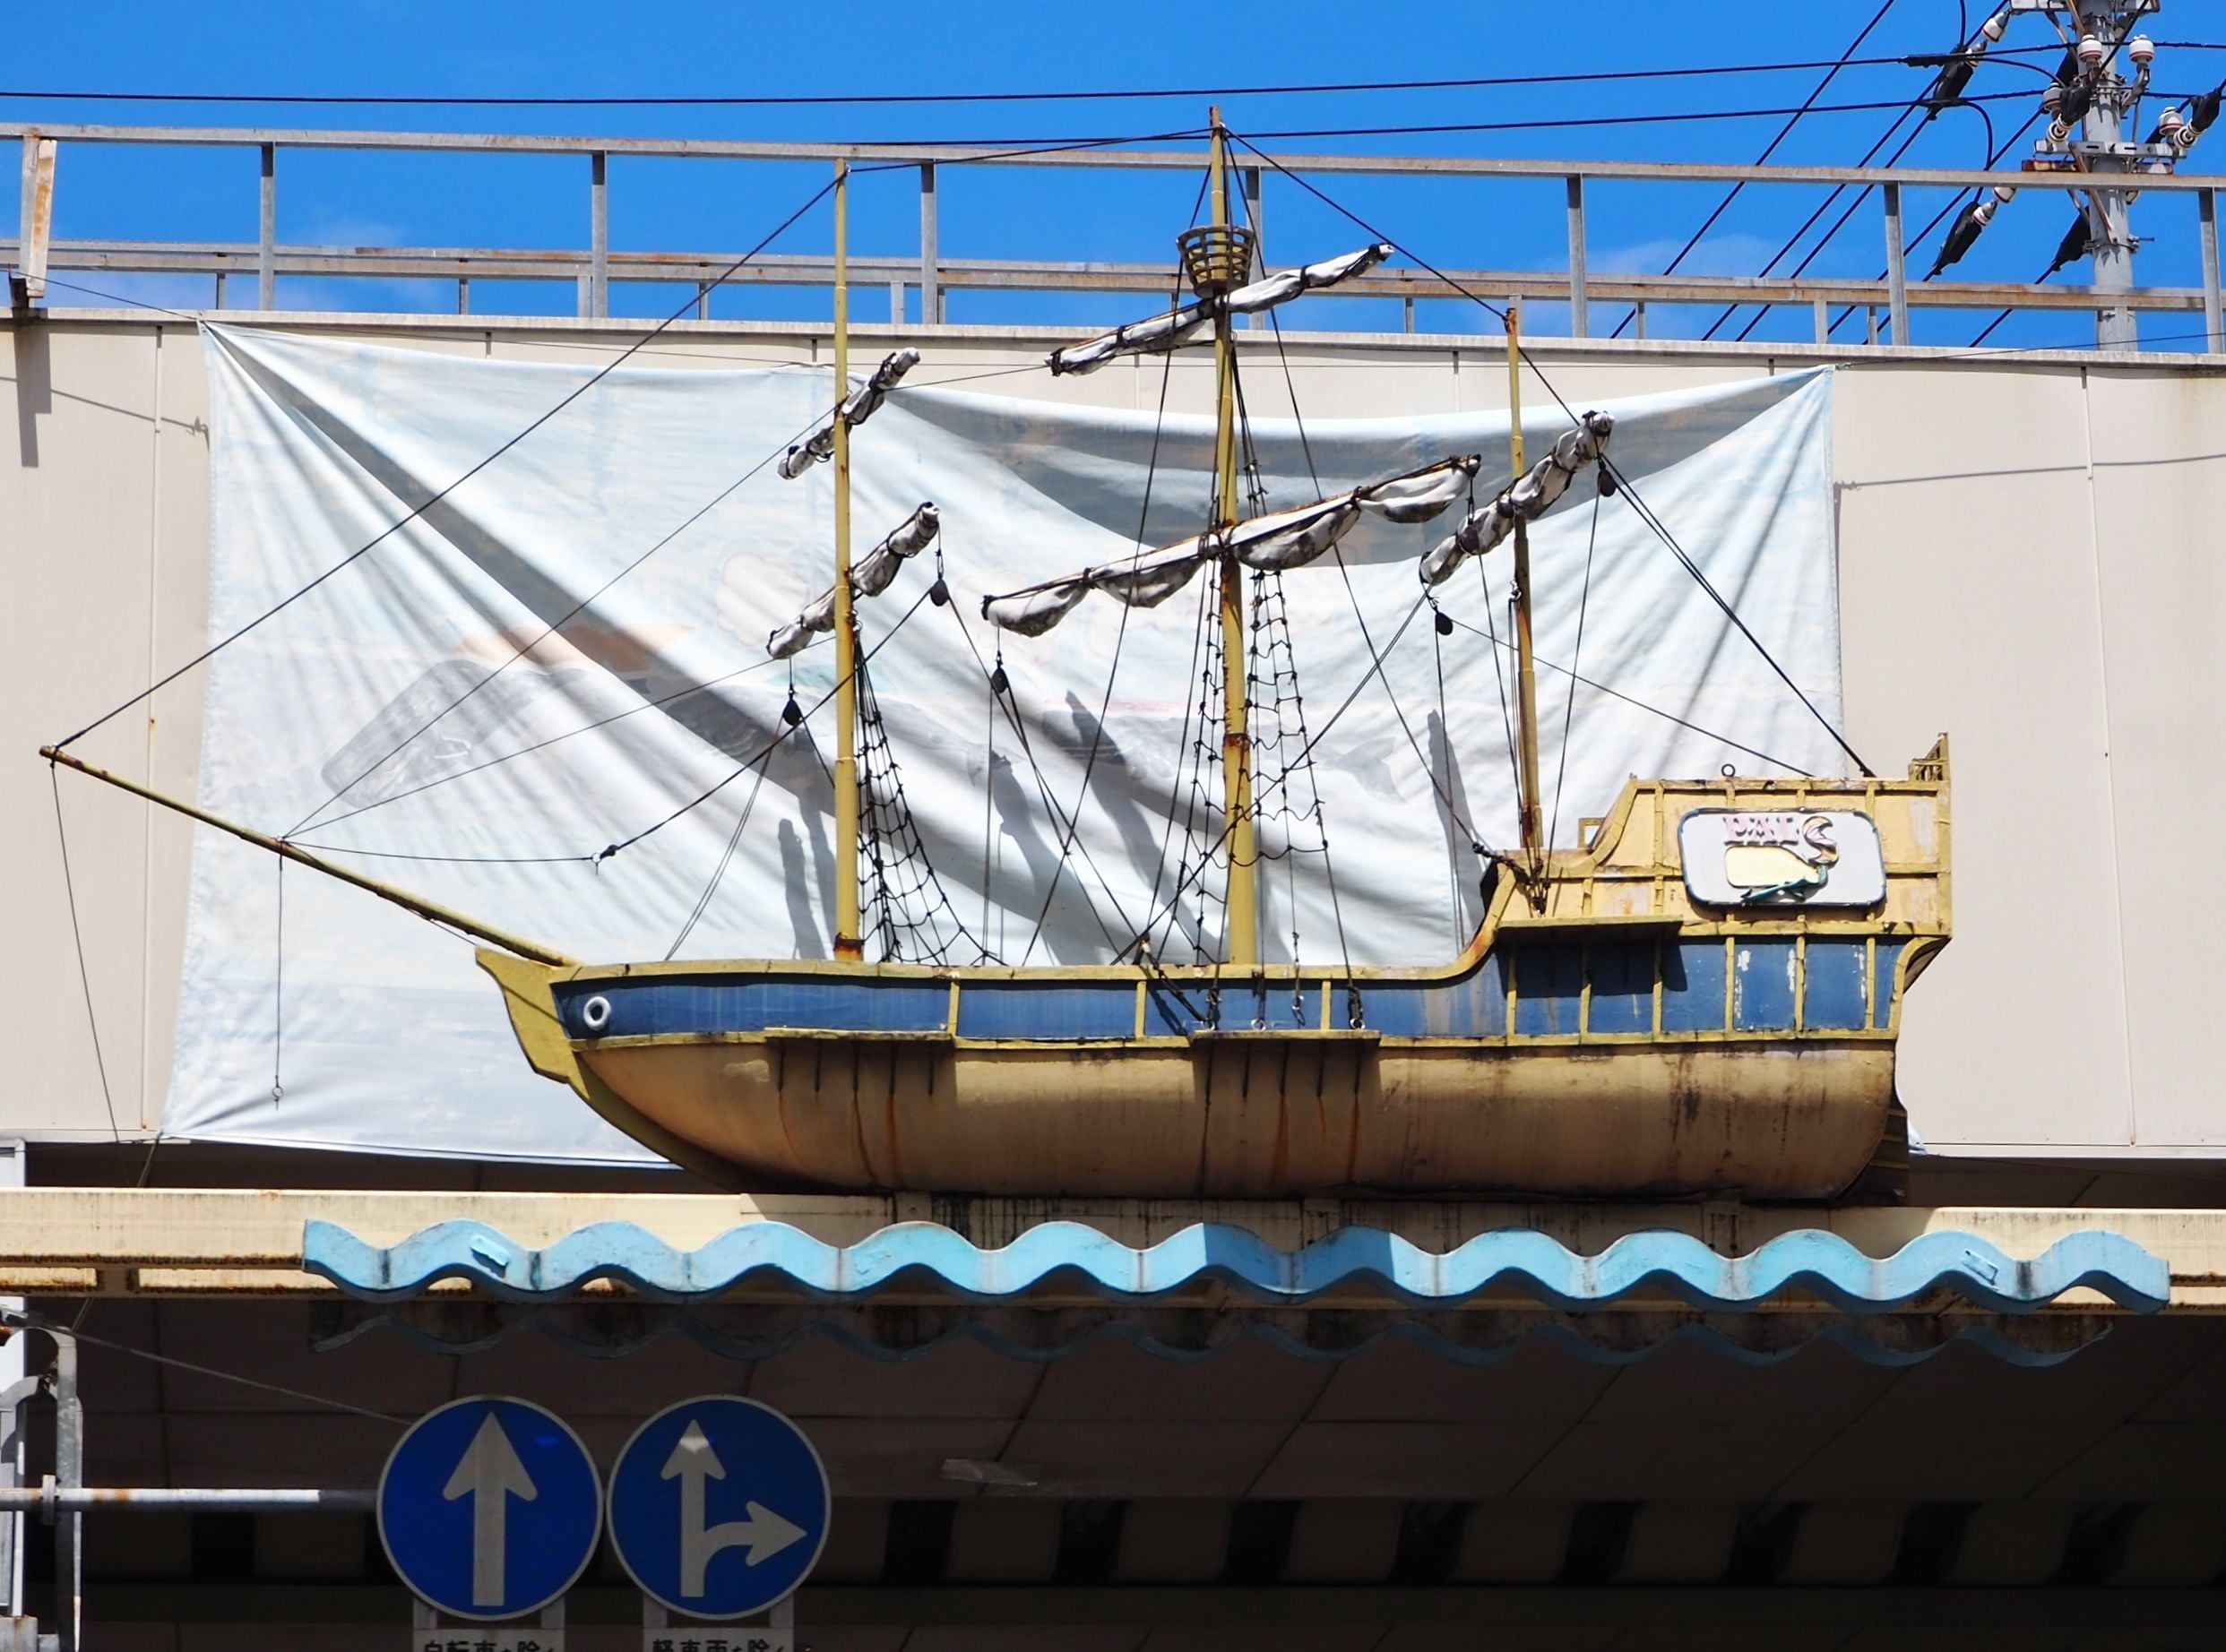 「パルス通り」に飾られた船のオブジェ